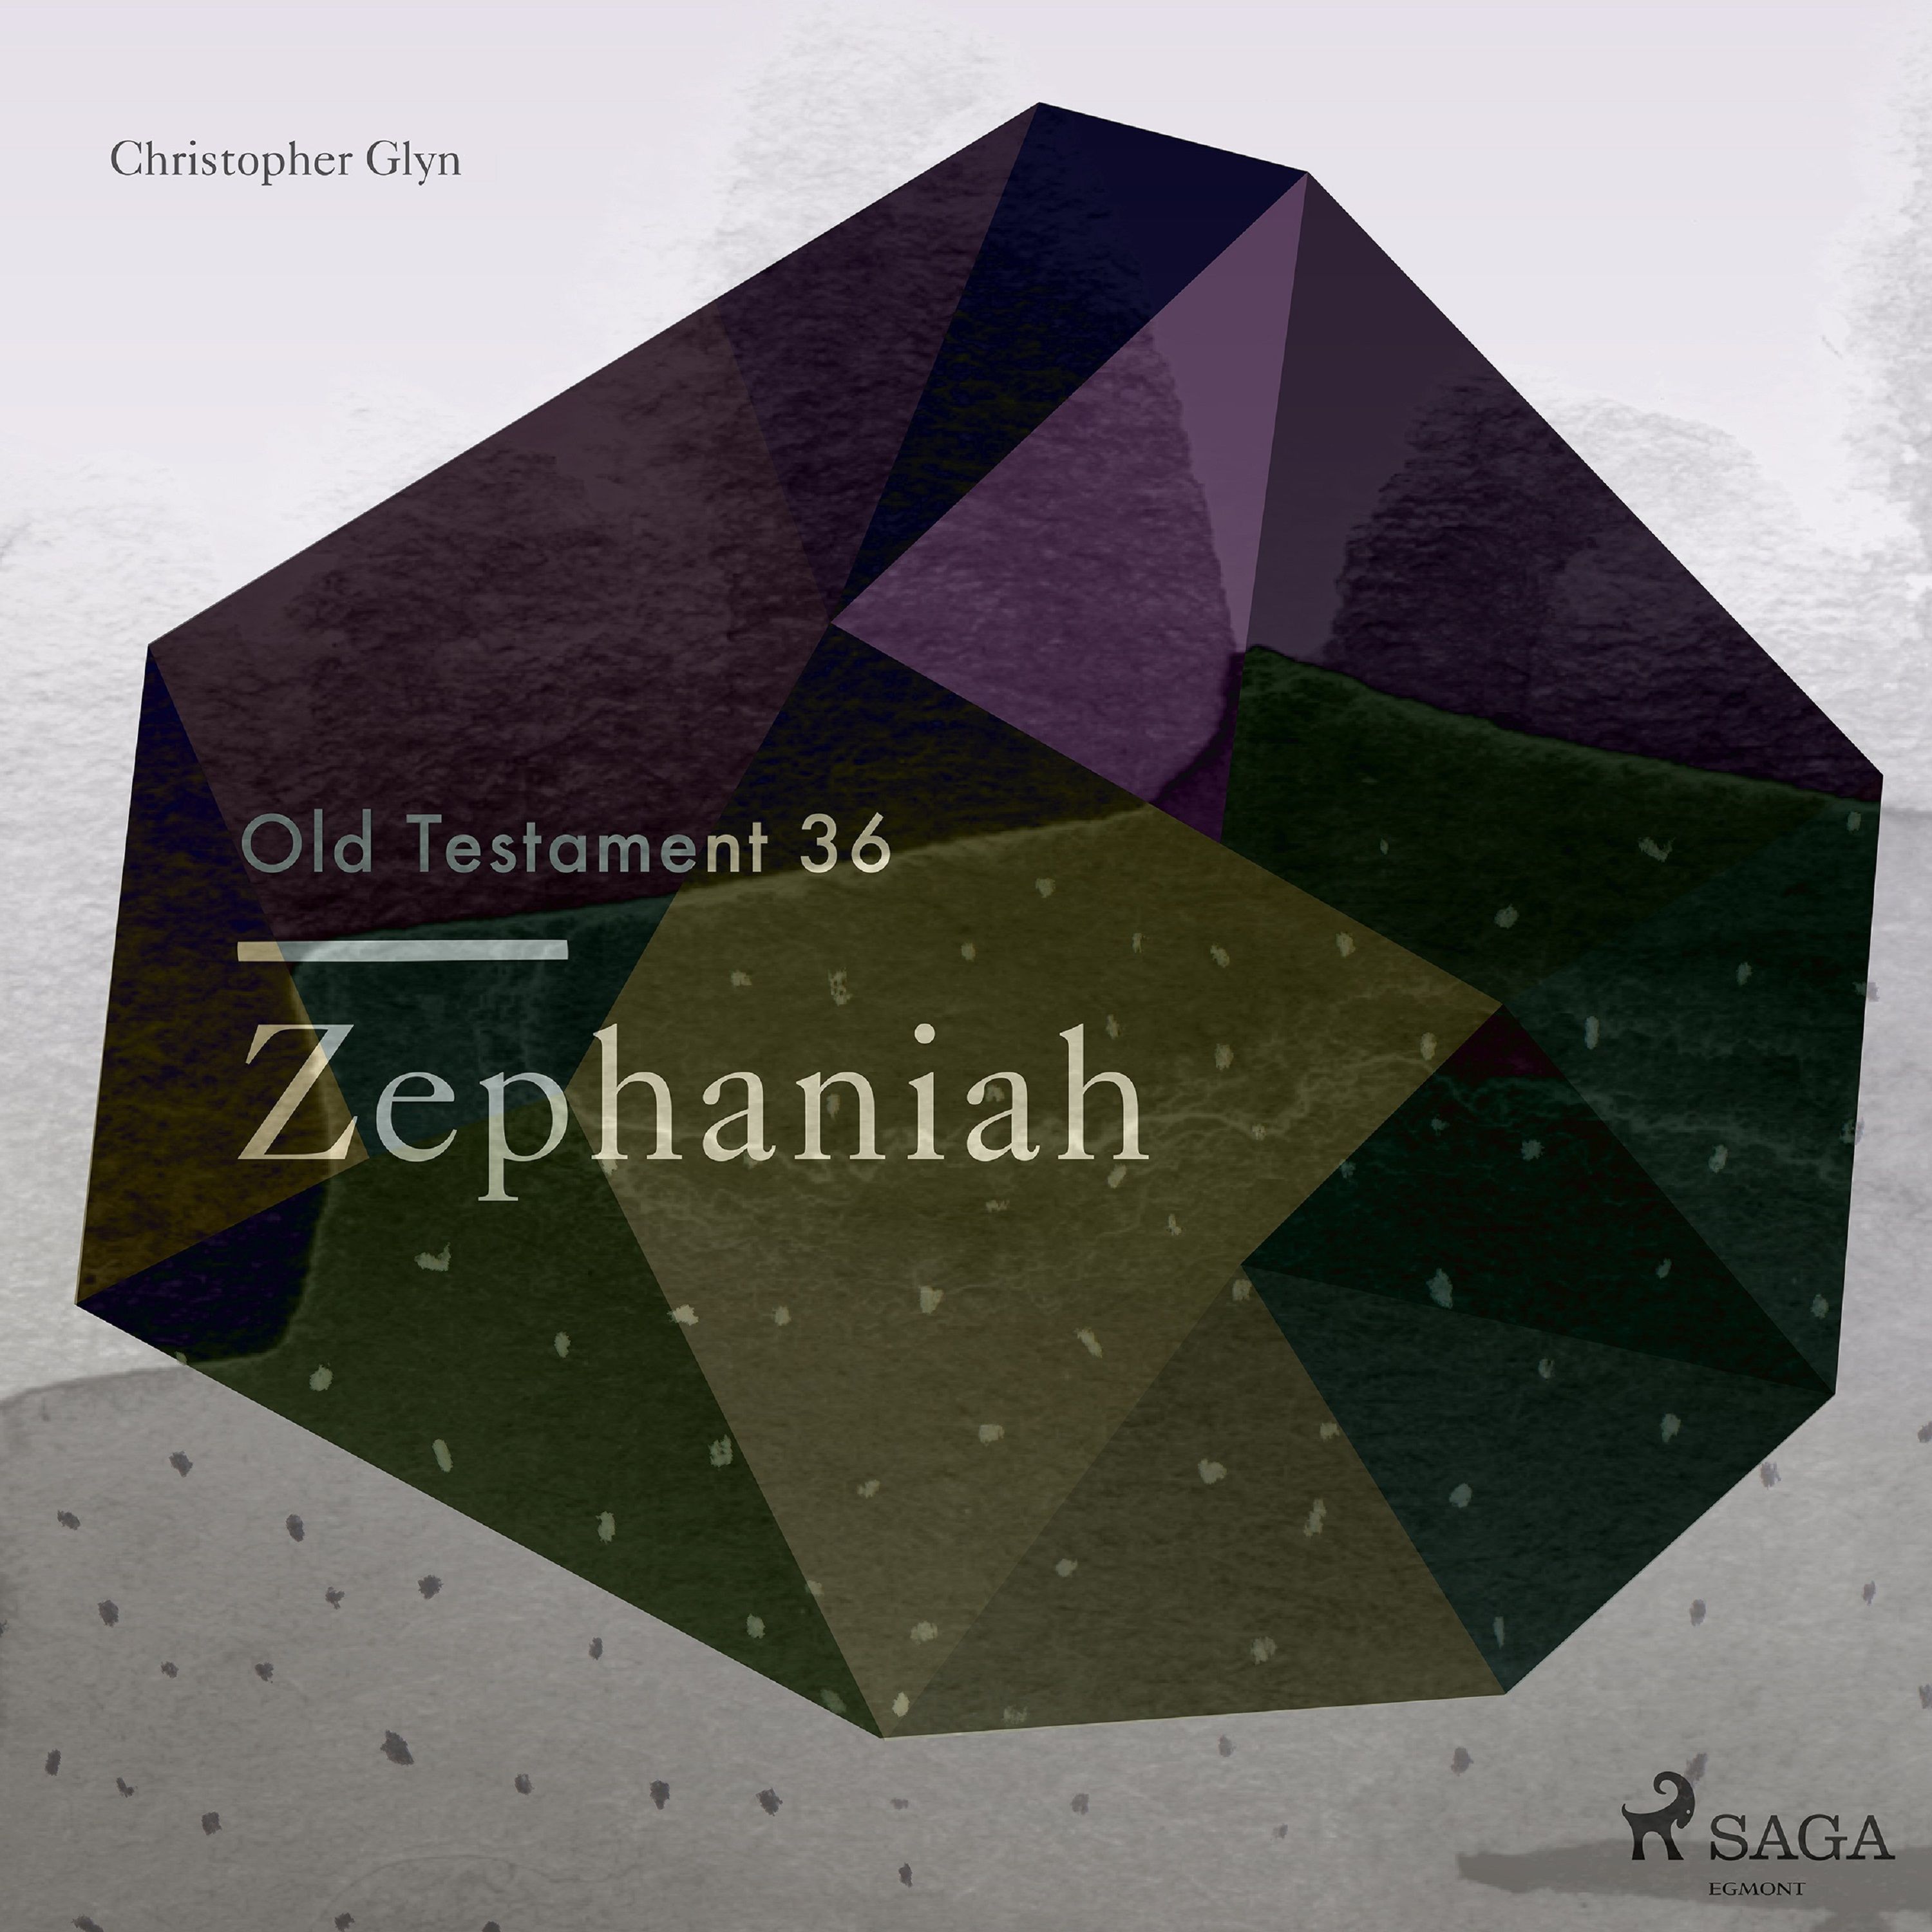 The Old Testament 36 - Zephaniah, lydbog af Christopher Glyn